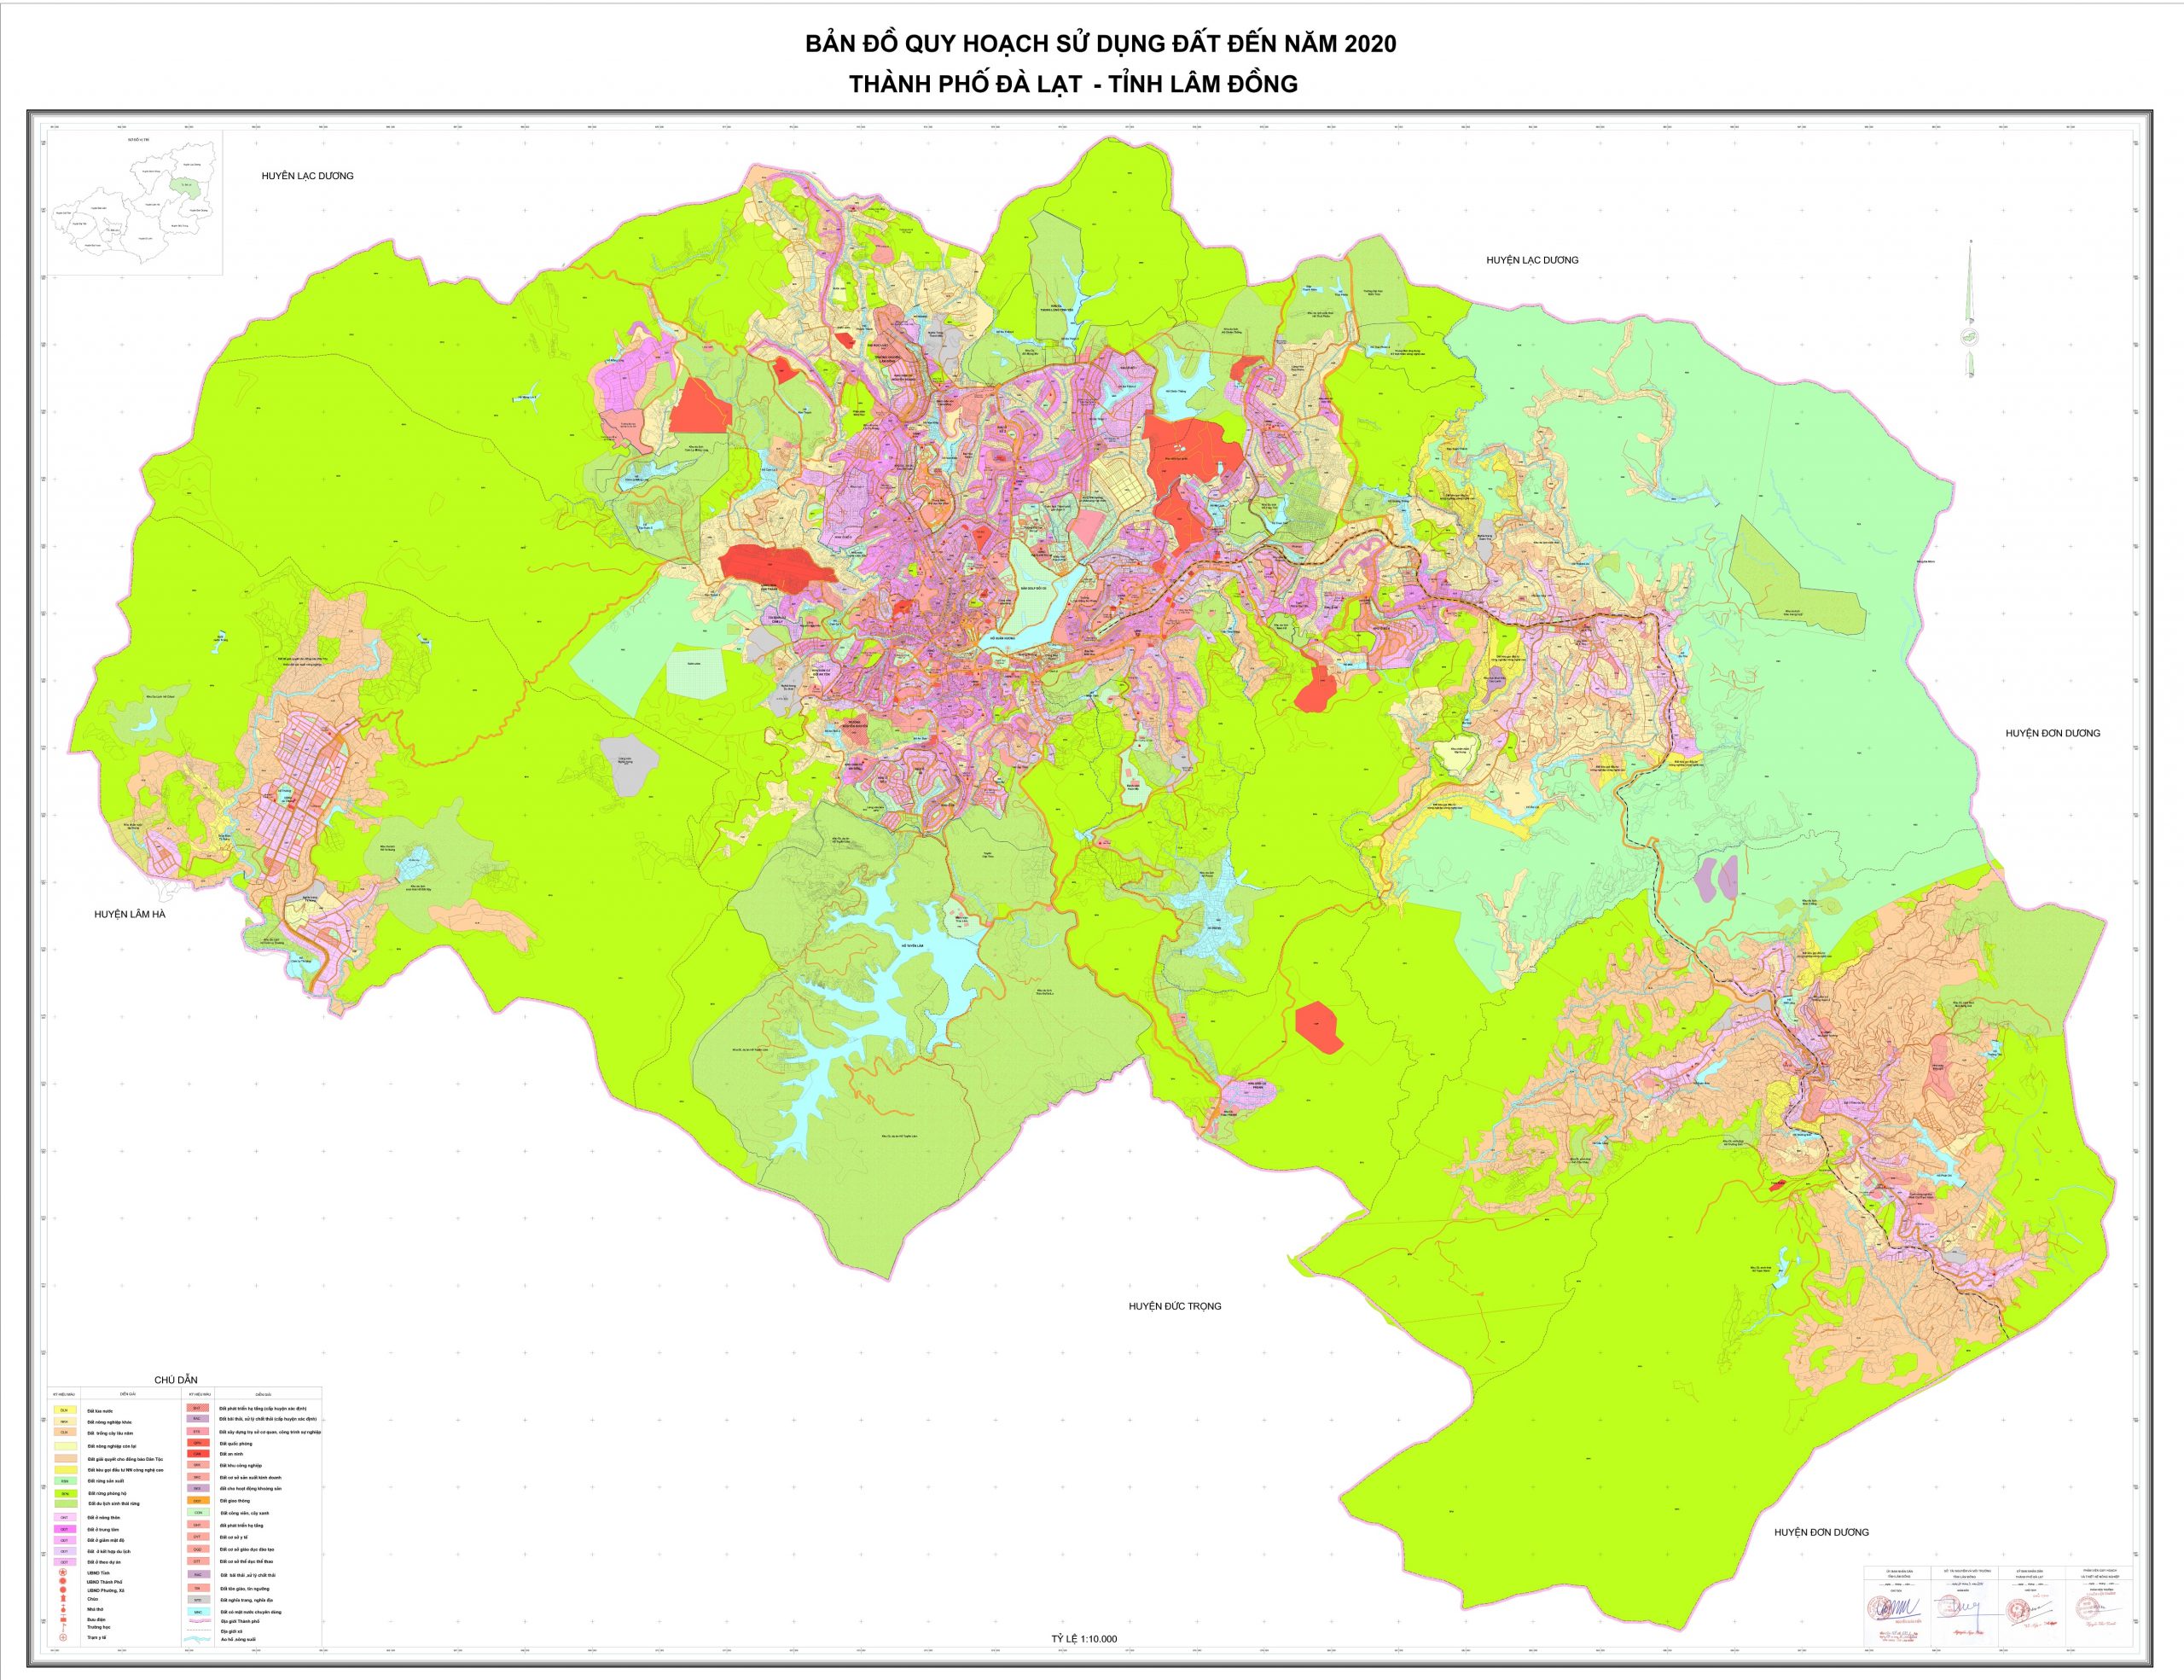 Bản đồ quy hoạch sử dụng đất ở Đà Lạt đến năm 2020